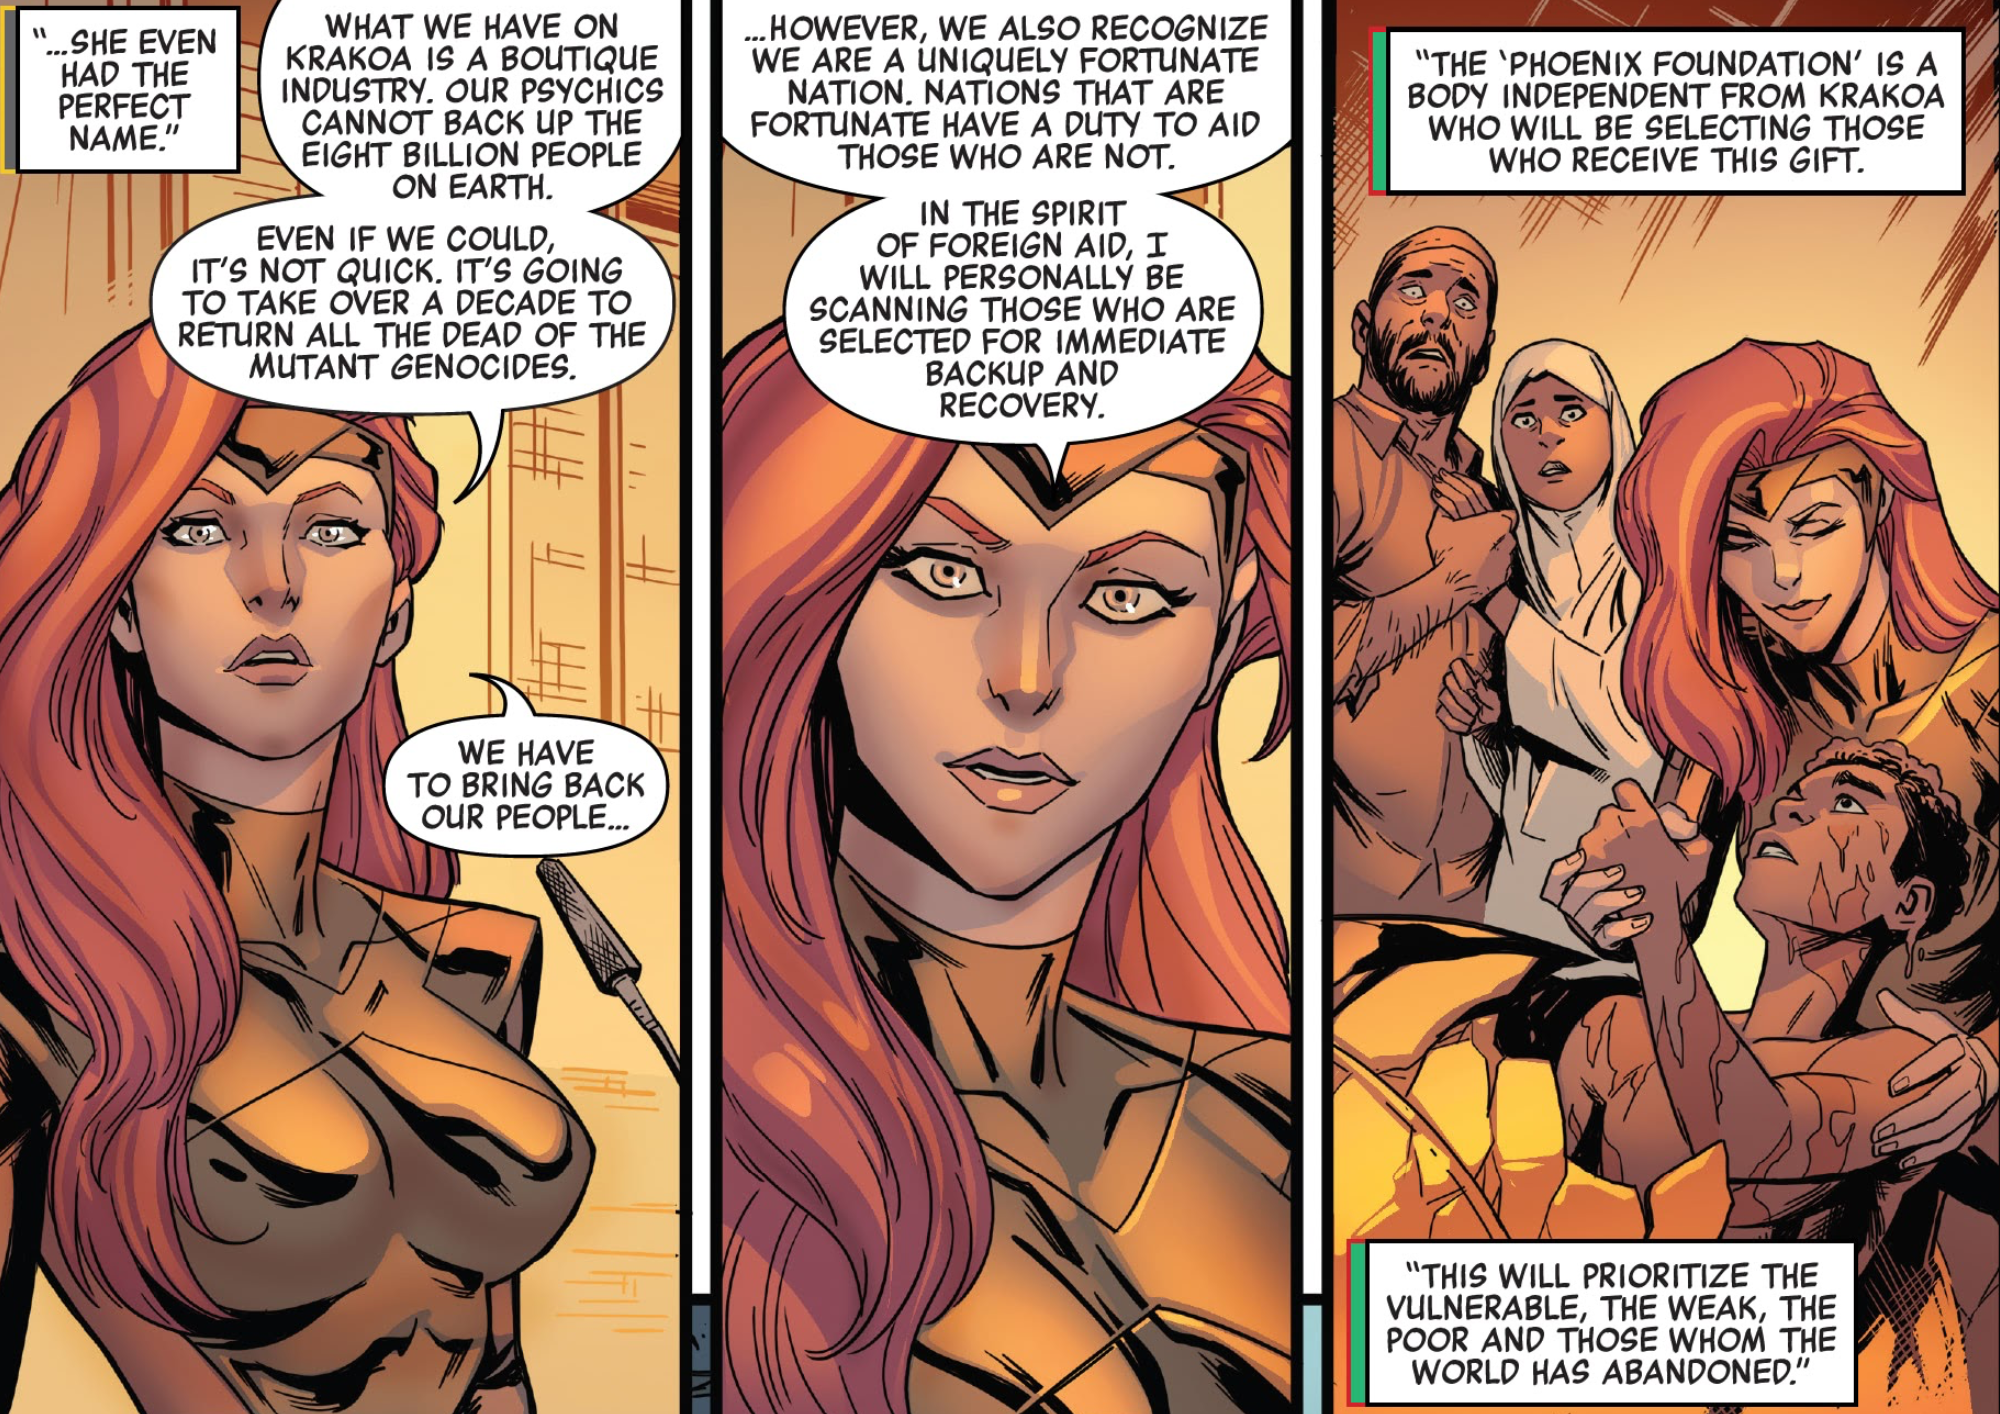 X-Men’s Jean Grey Is Reclaiming Her Phoenix Codename in a Genius Way